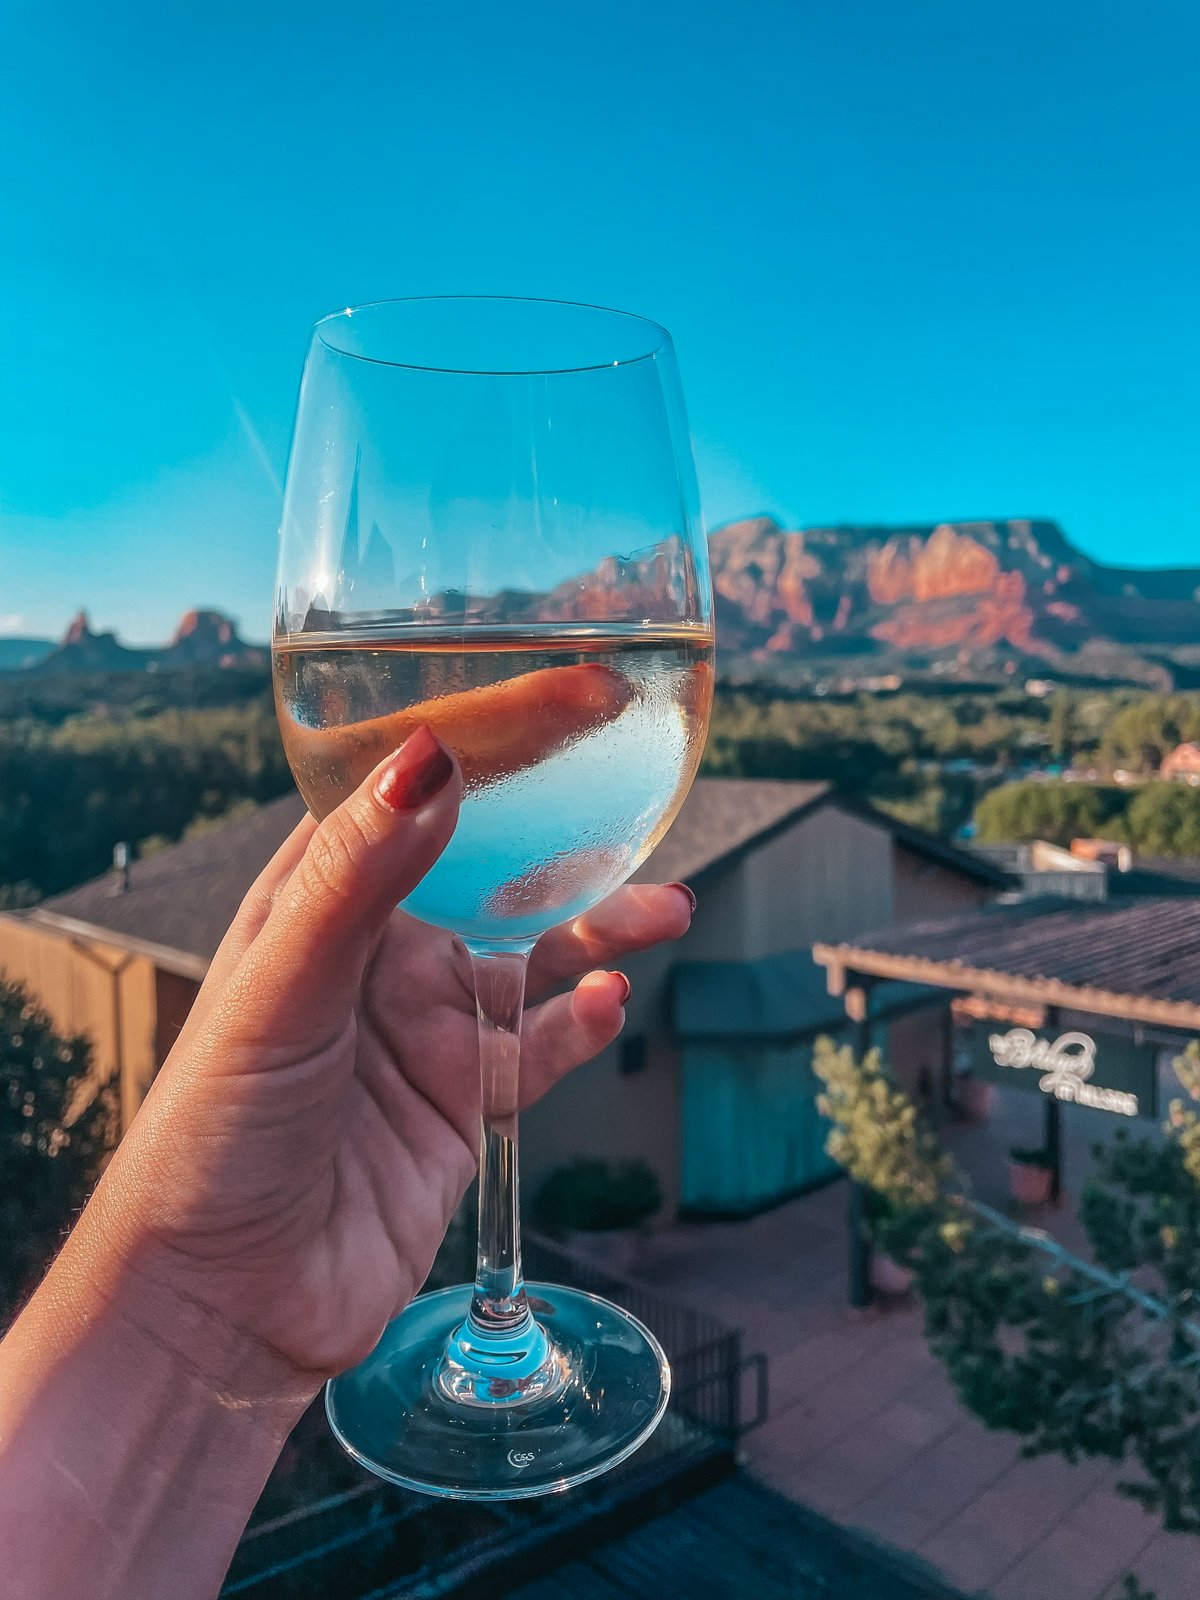 Glass of white wine from The Hudson restaurant in Sedona Arizona